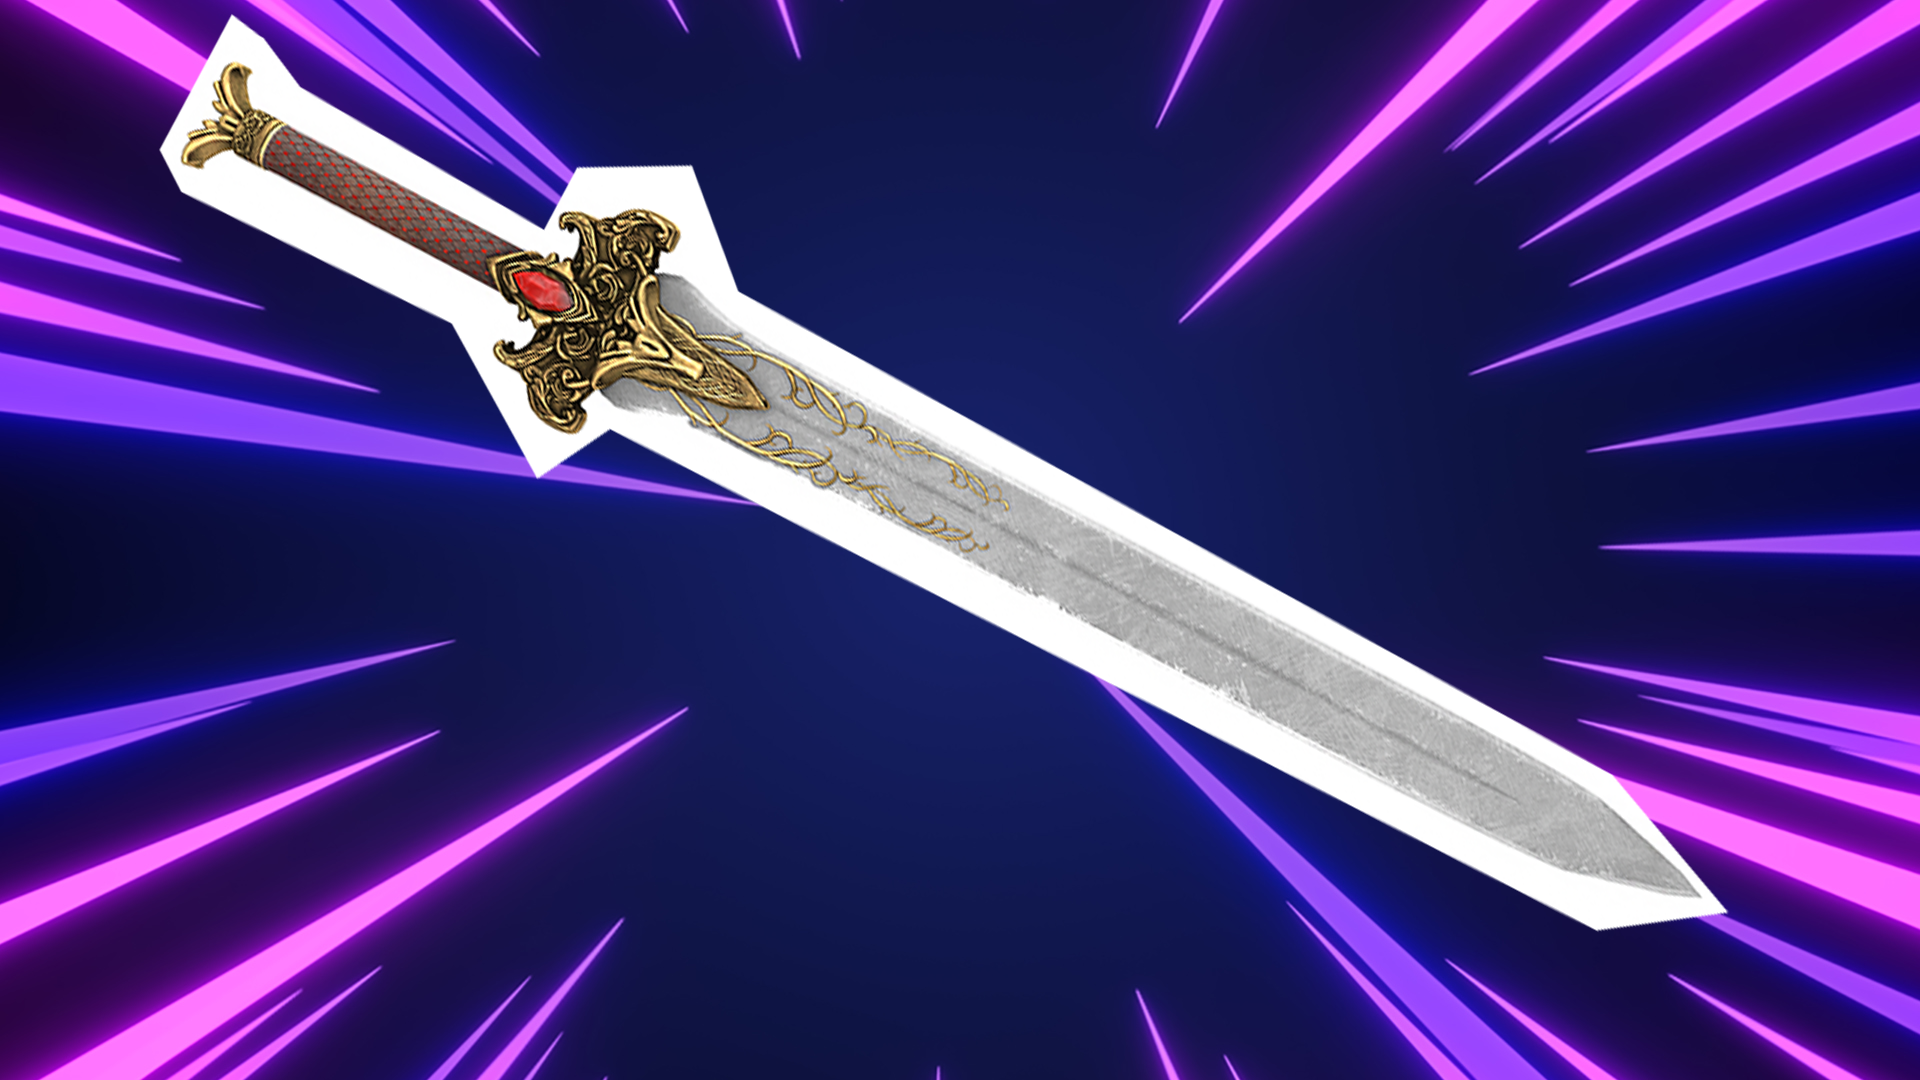 Sword on laser background